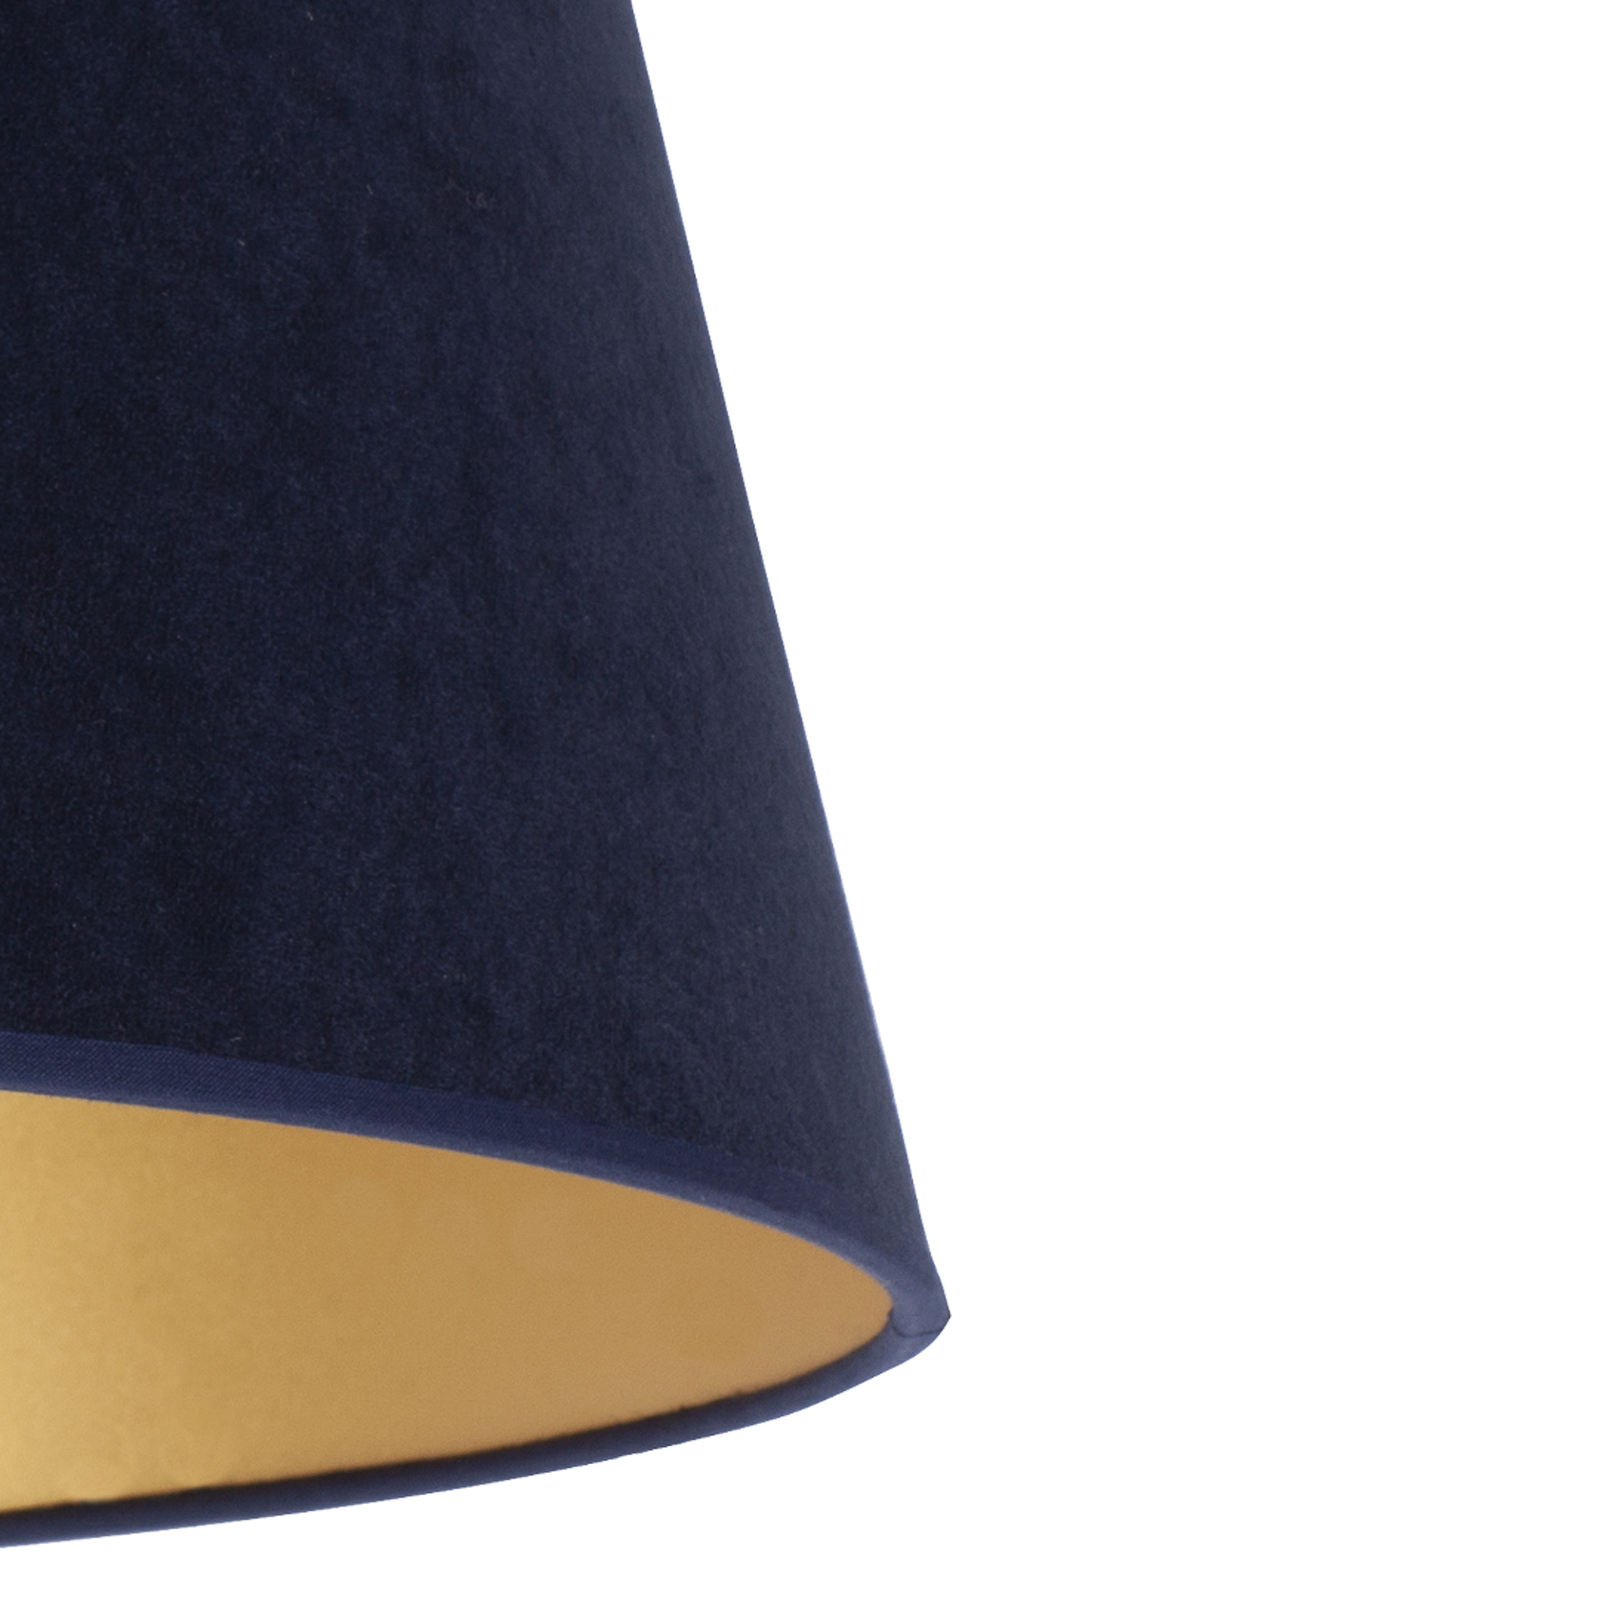 Lampeskjerm Cone 18 cm, mørkeblå/gull